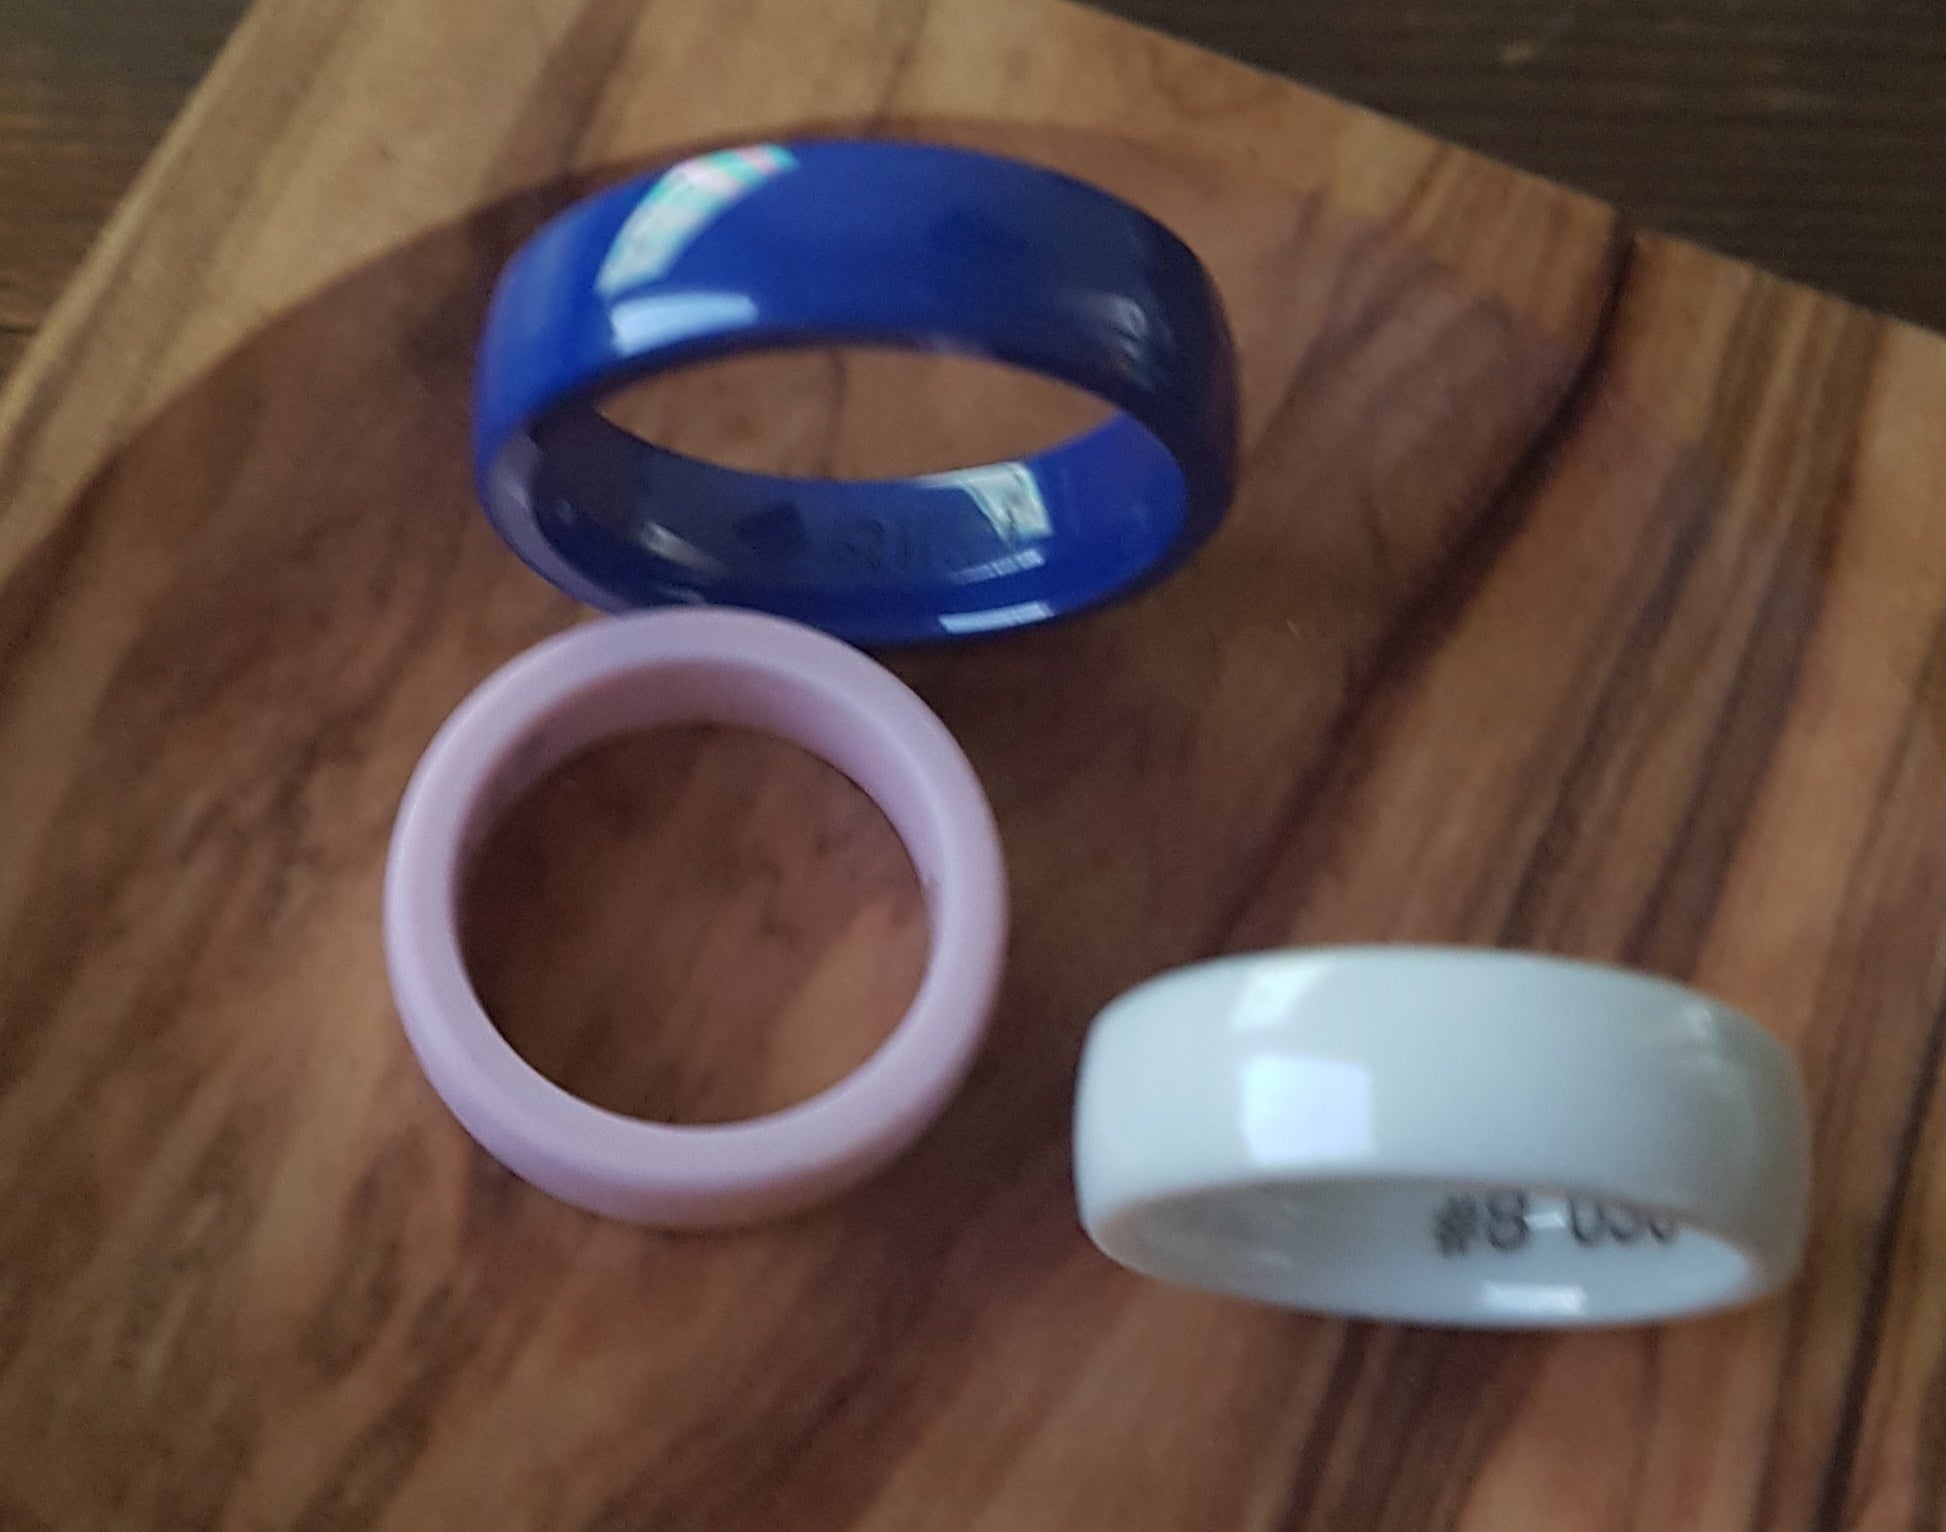 El anillo de Rikki para pagar está diseñado para adolescentes - {DF}  DiarioFinanciero